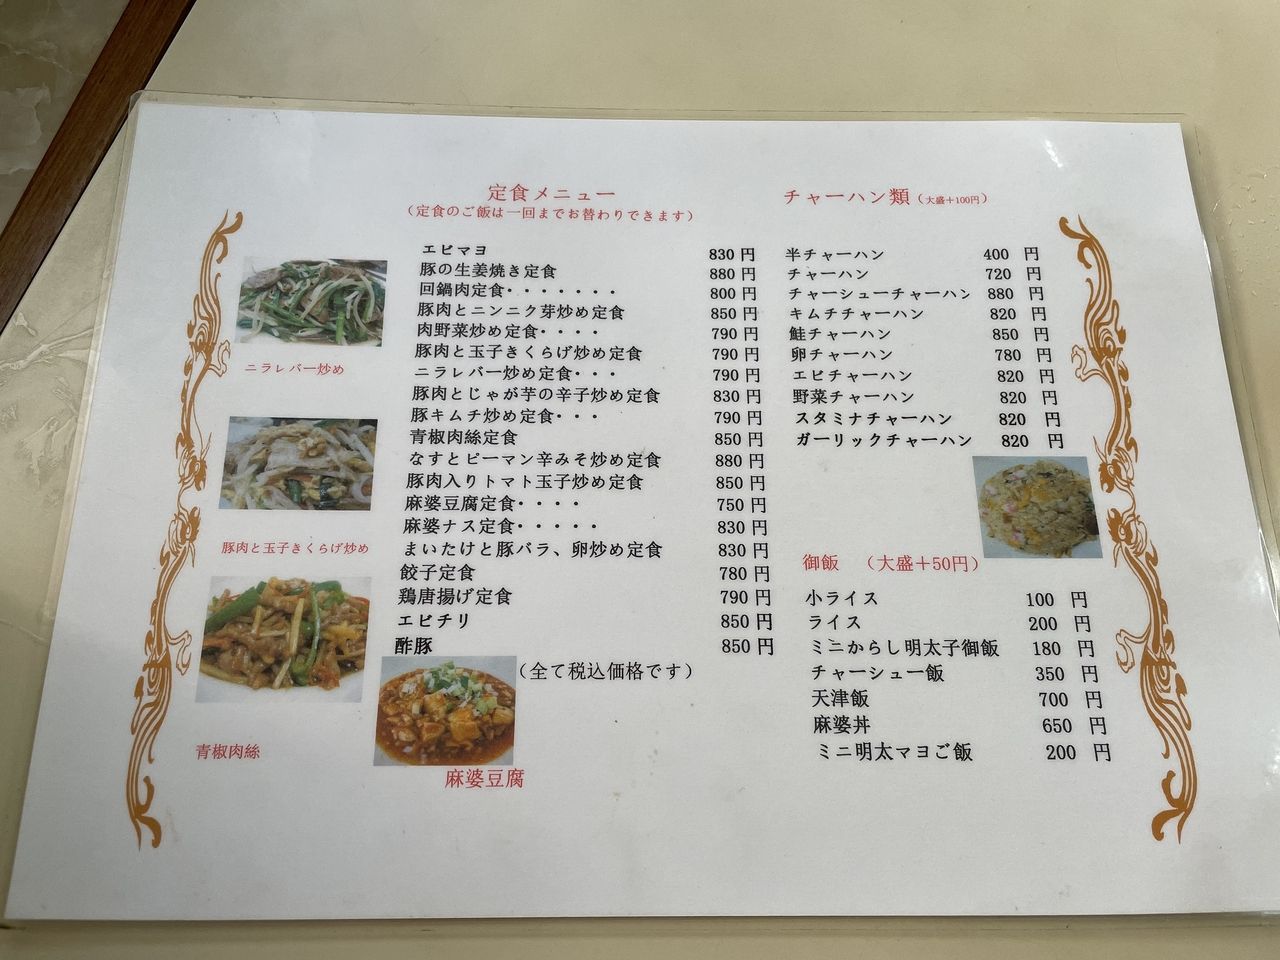 中華つけ麺 はるきの定食・ご飯類メニュー